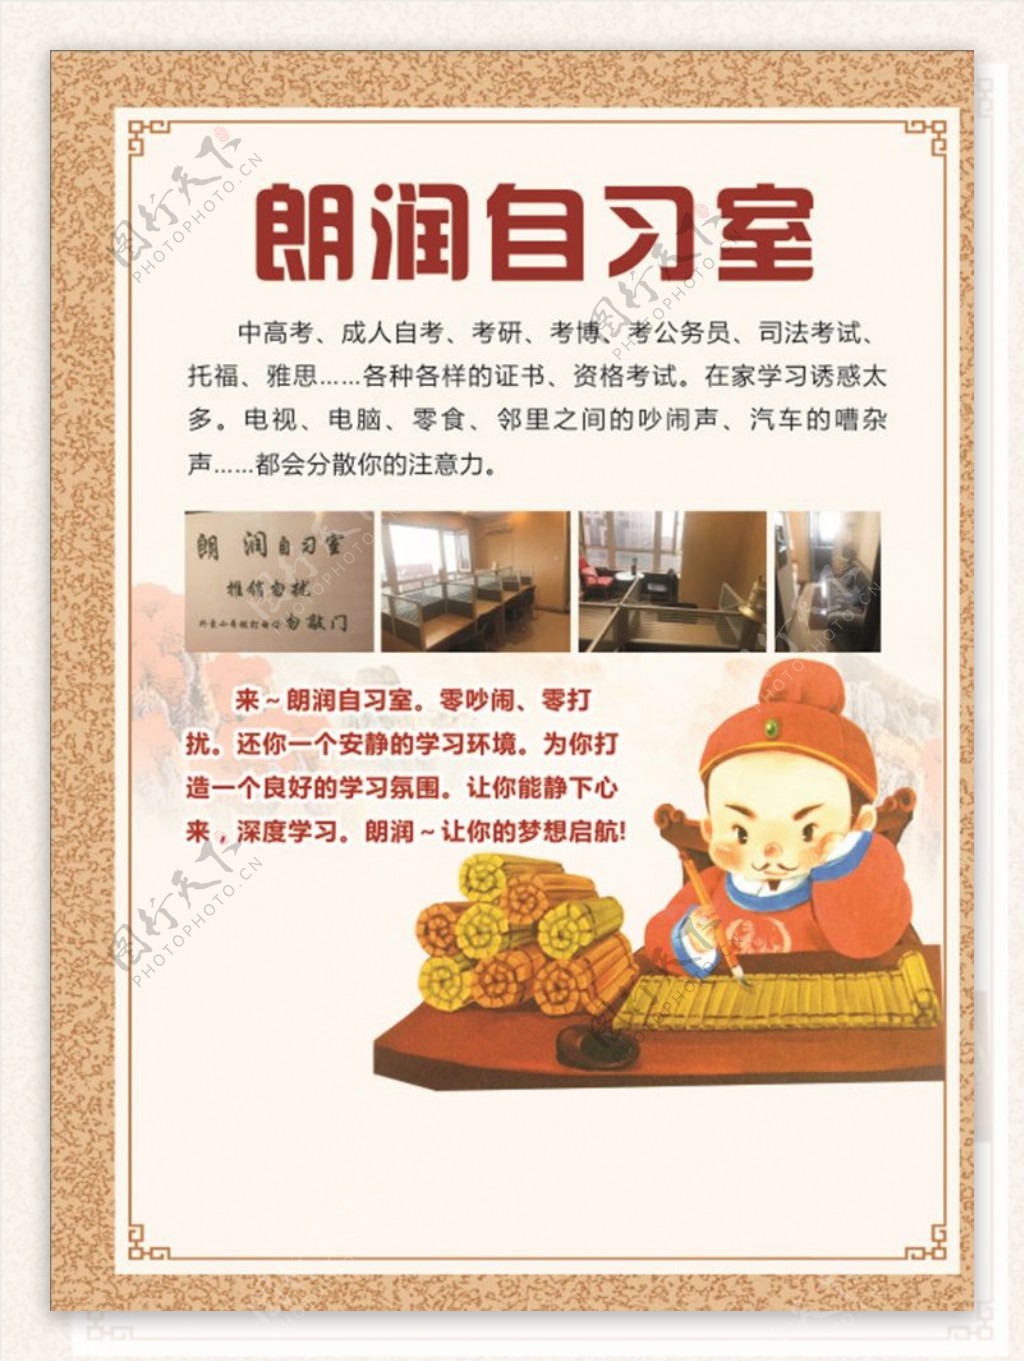 自习室海报中国风图片